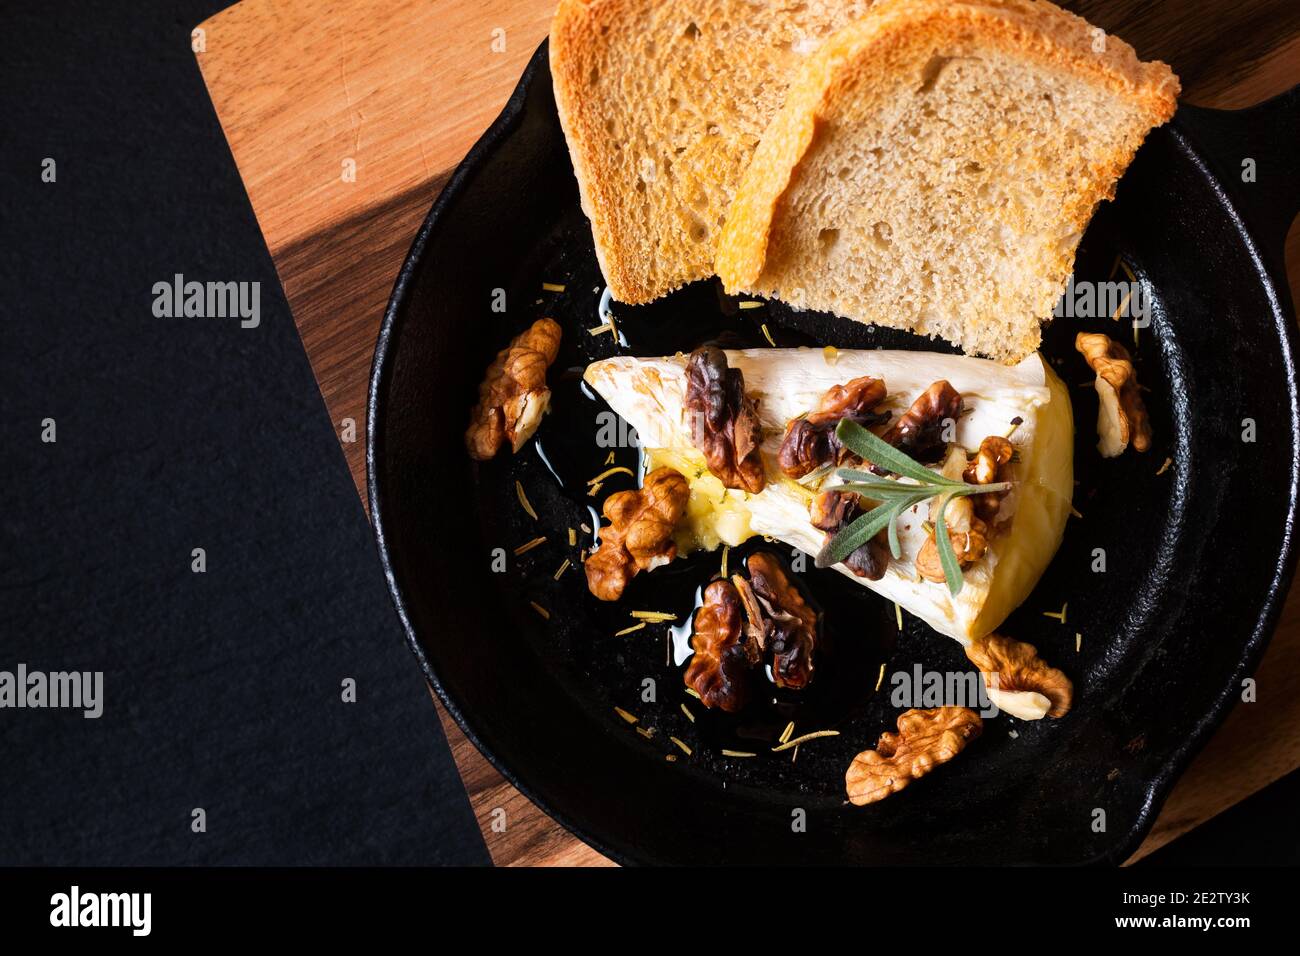 Concetto di cibo punto fuoco casereccio cotto formaggio Brie con miele e noci in padella di ferro su tavola di legno con spazio di copia pietra ardesia nera Foto Stock